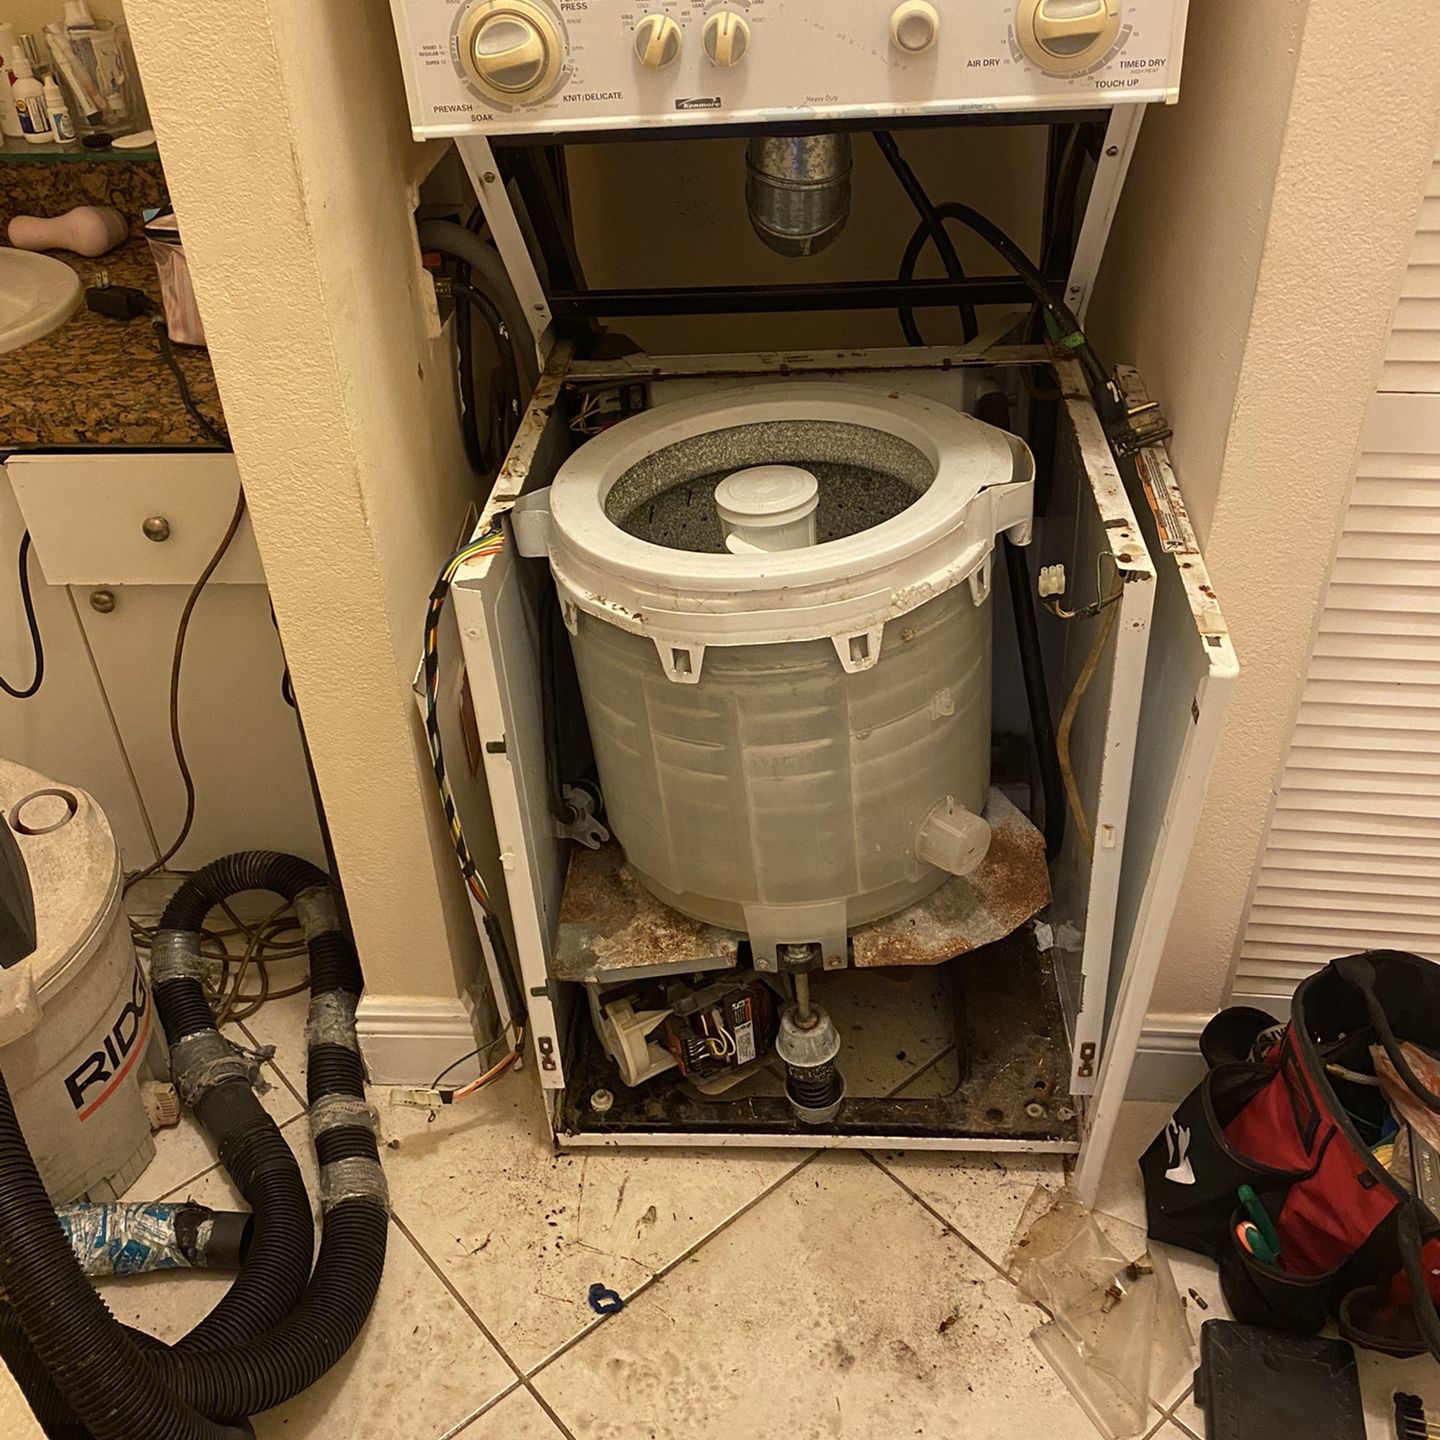 Used Appliances Repair